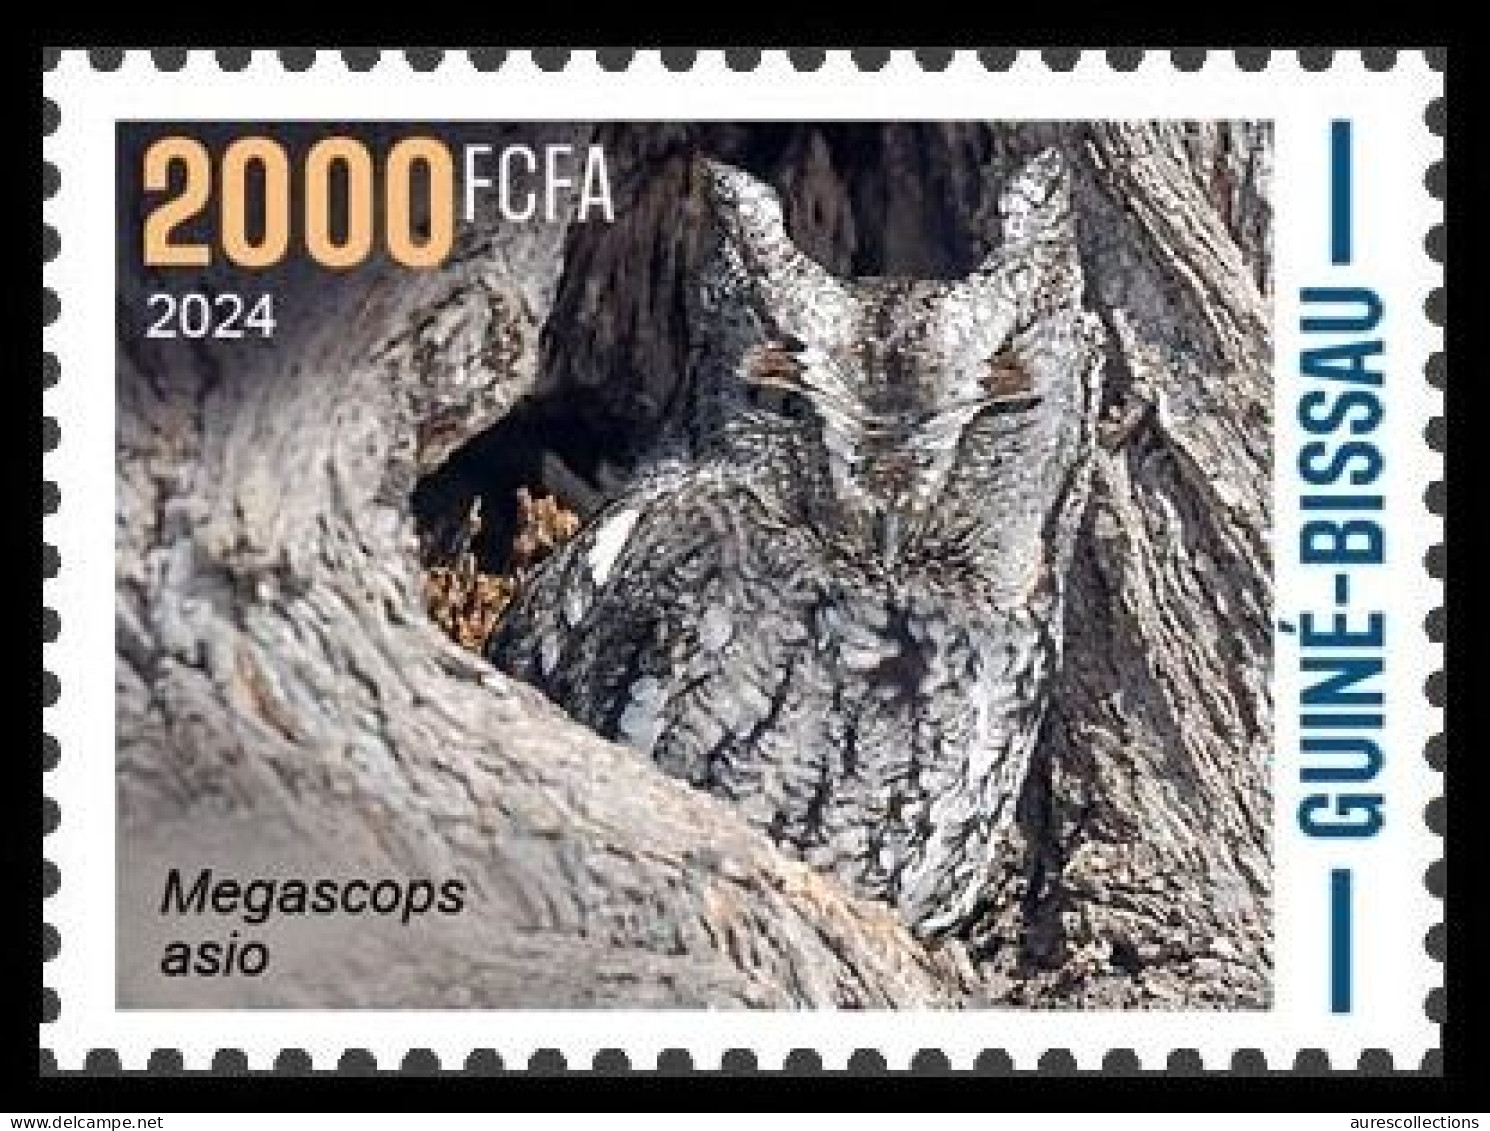 GUINEA BISSAU 2024 STAMP 1V - CAMOUFLAGE - OWLS OWL HIBOUX HIBOU BIRDS OISEAUX - MNH - Eulenvögel